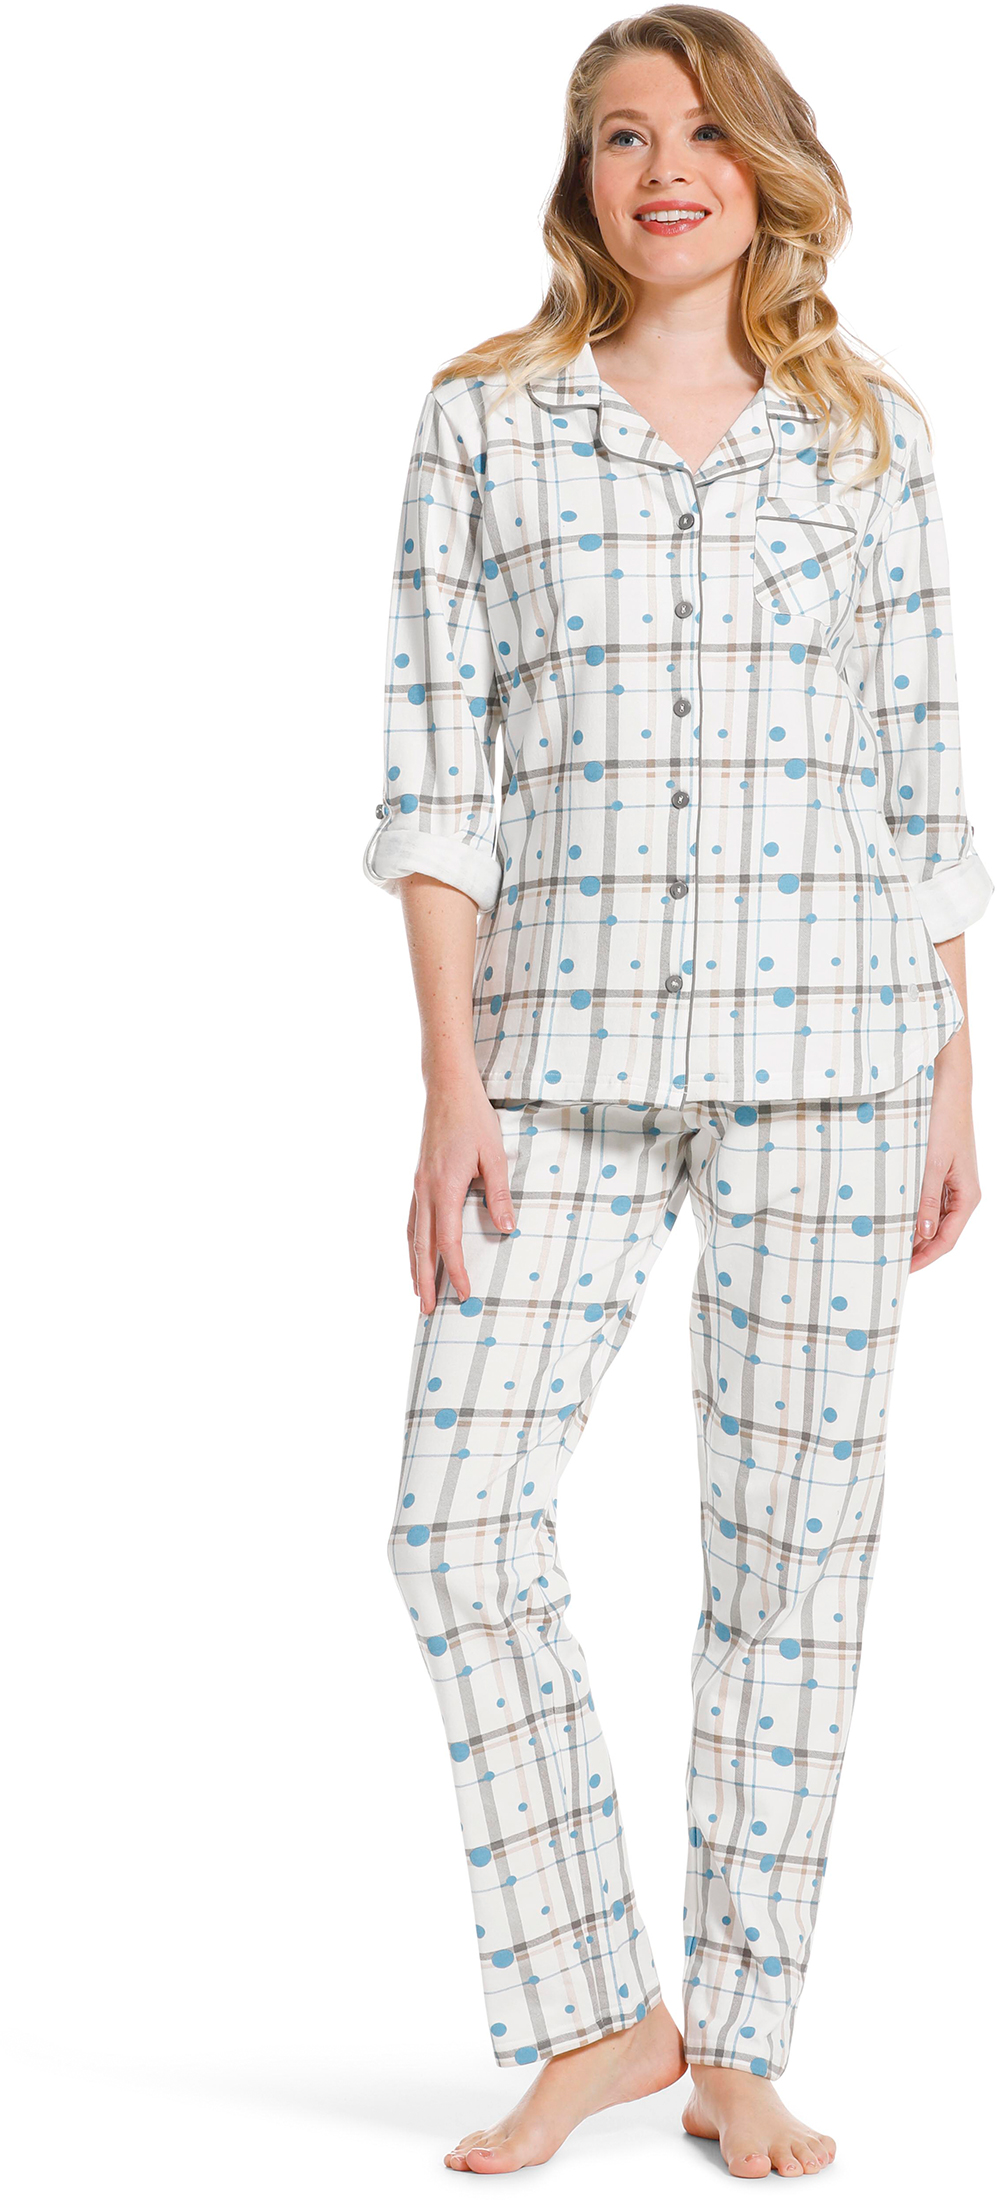 Pastunette dames doorknoop pyjama 20222 142 6 42